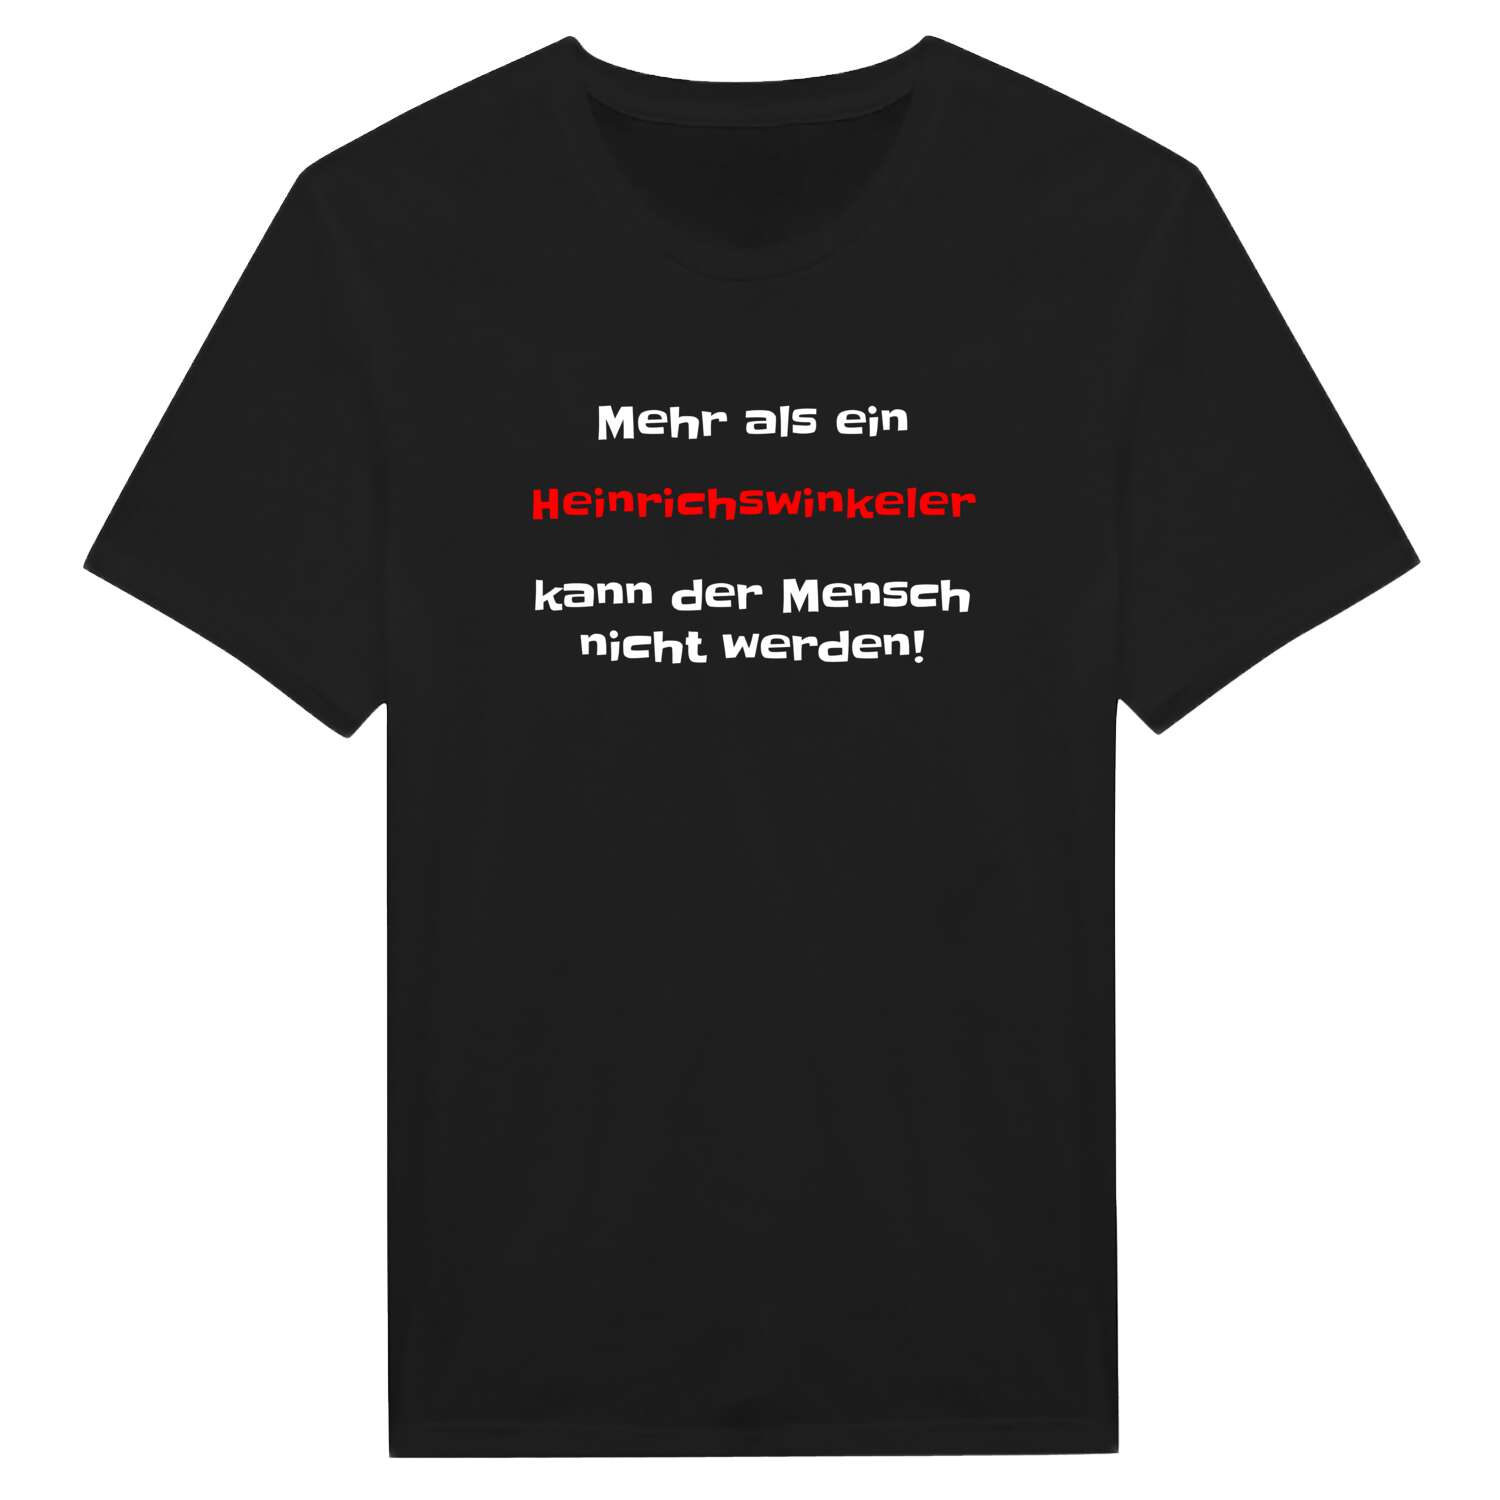 Heinrichswinkel T-Shirt »Mehr als ein«